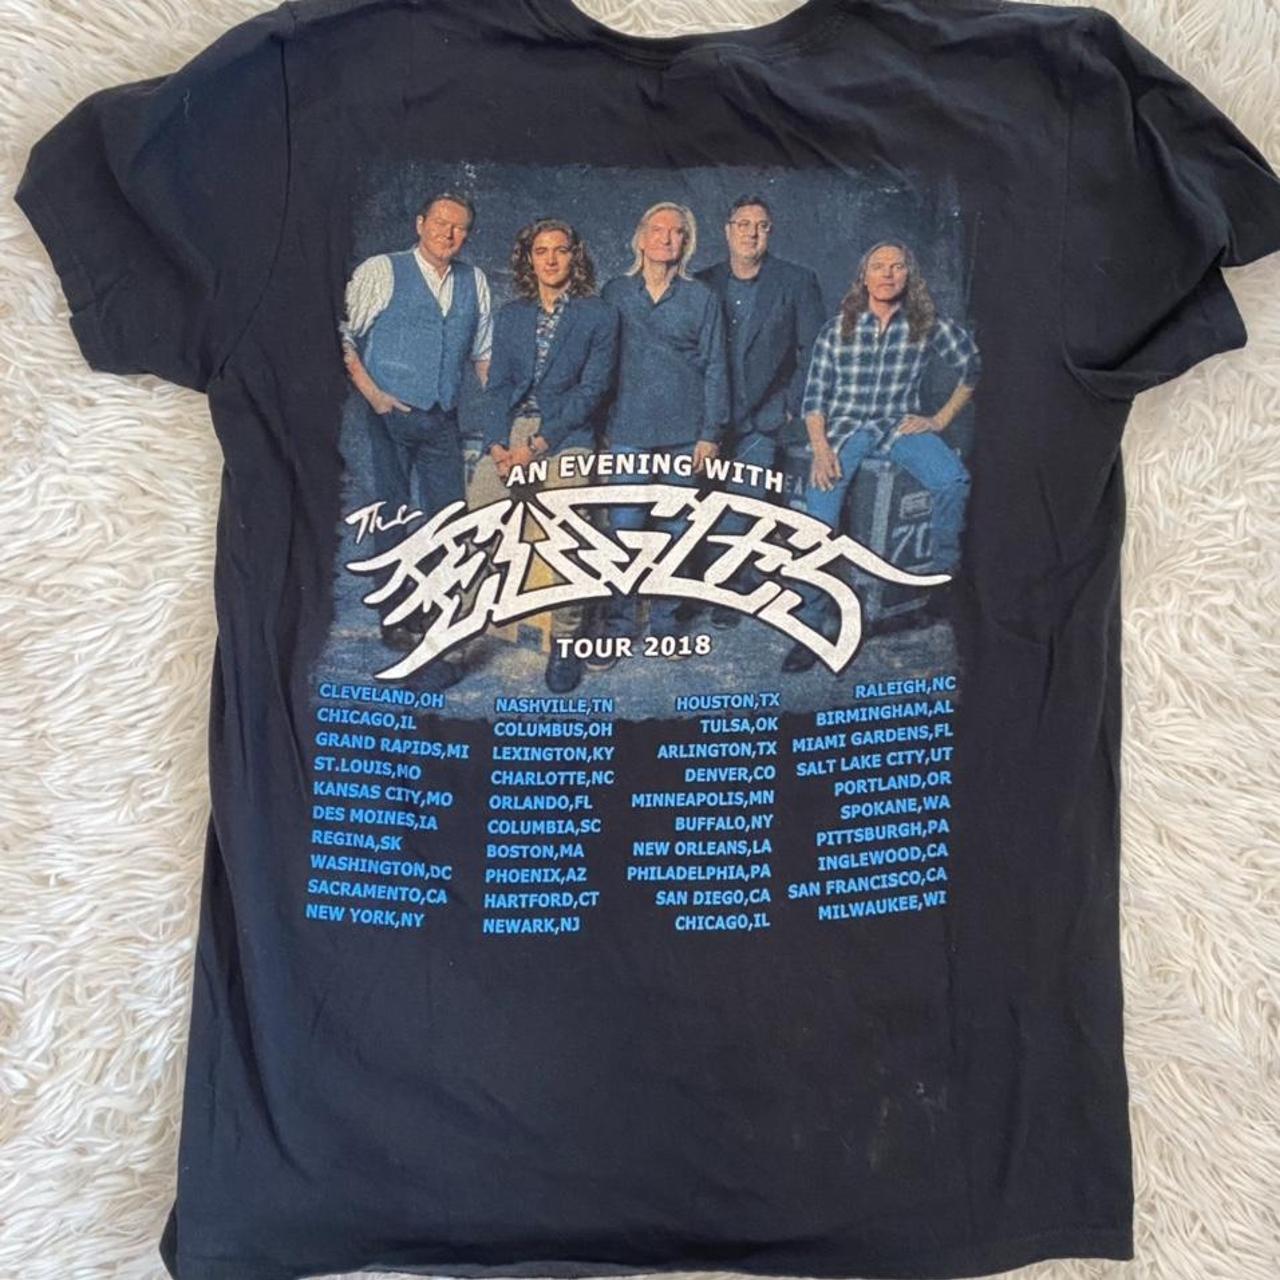 Eagles 2018 tour Tshirt.Small $20 16 1/2  - Depop